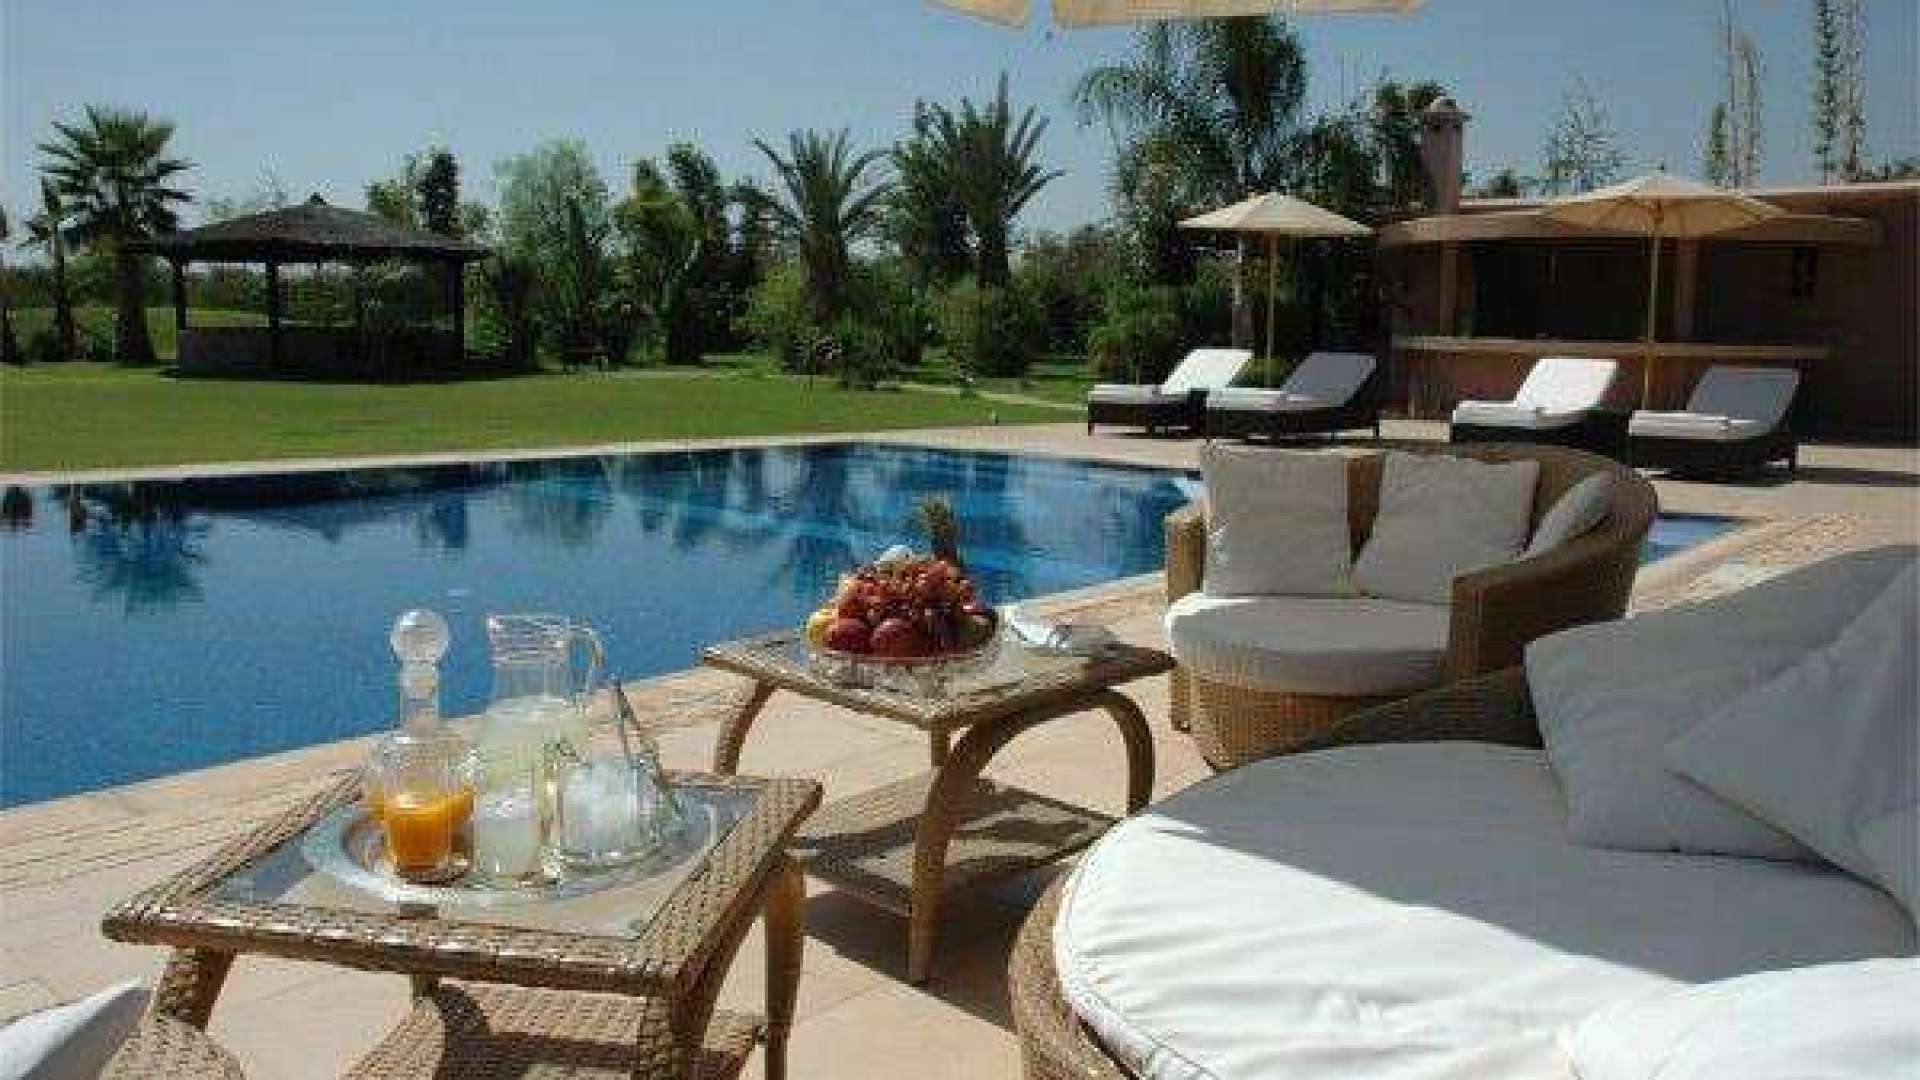 Location de vacances,Villa,Villa 6ch avec centre de bien-être et piscine privés à 20 min. du centre de Marrakech,Marrakech,Route de l'Ourika